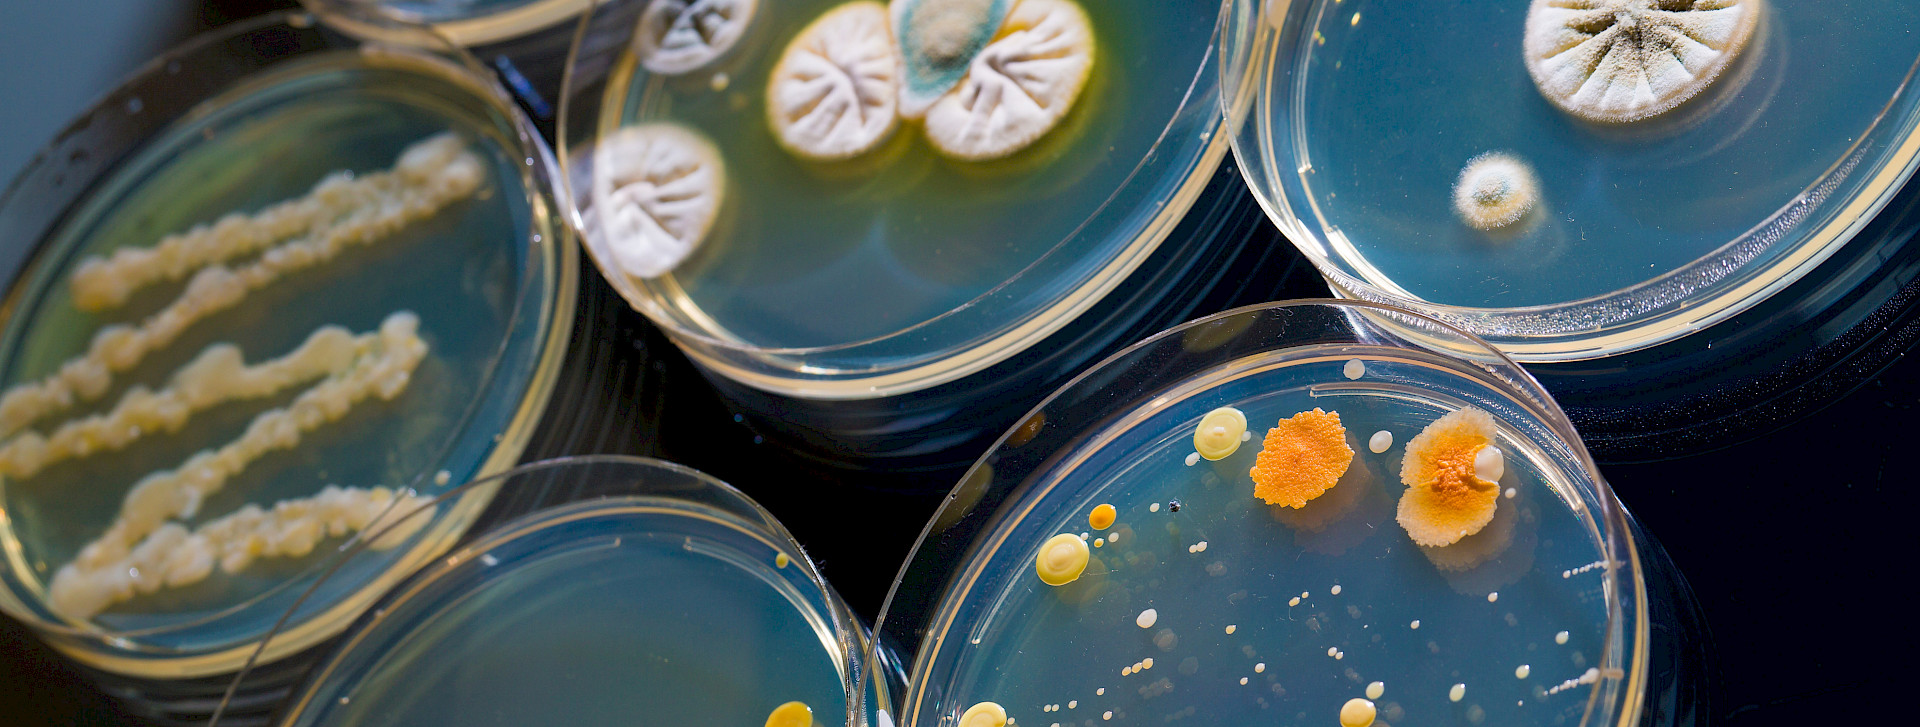 Petrischale mit wachsenden Kulturen von Mikroorganismen und Pilzen